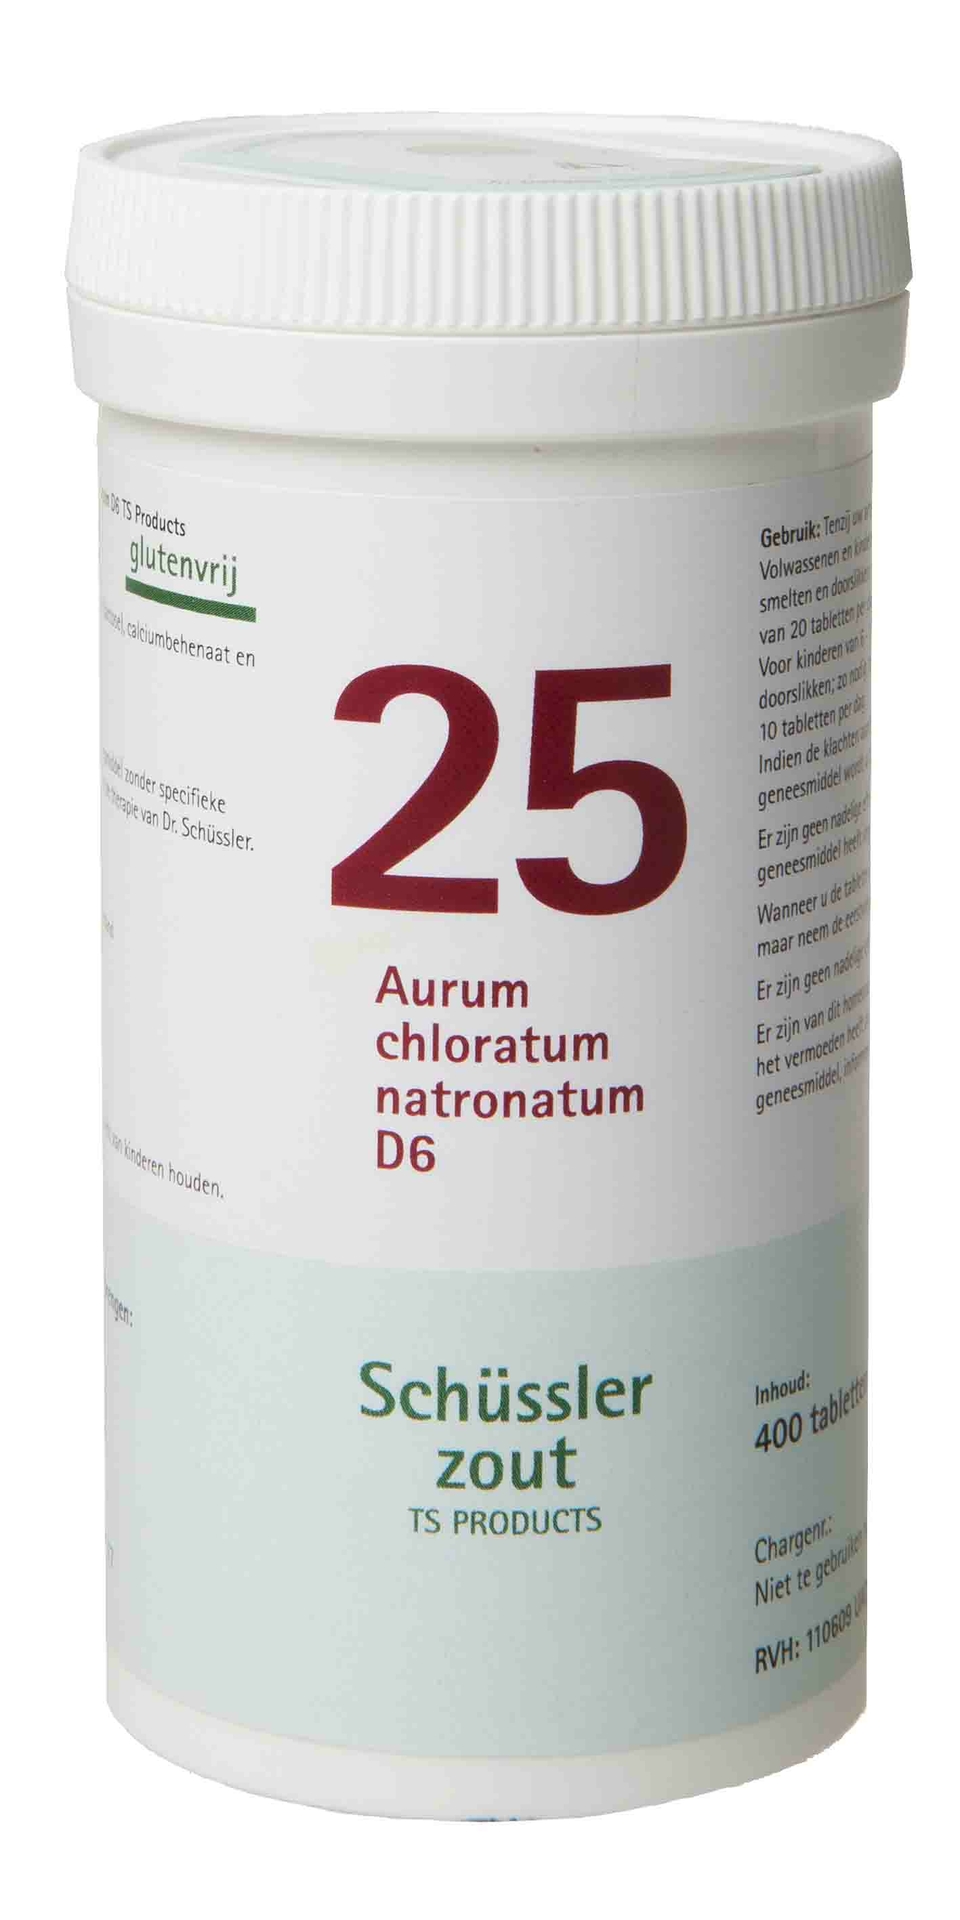 Aurum chloratum natronatum